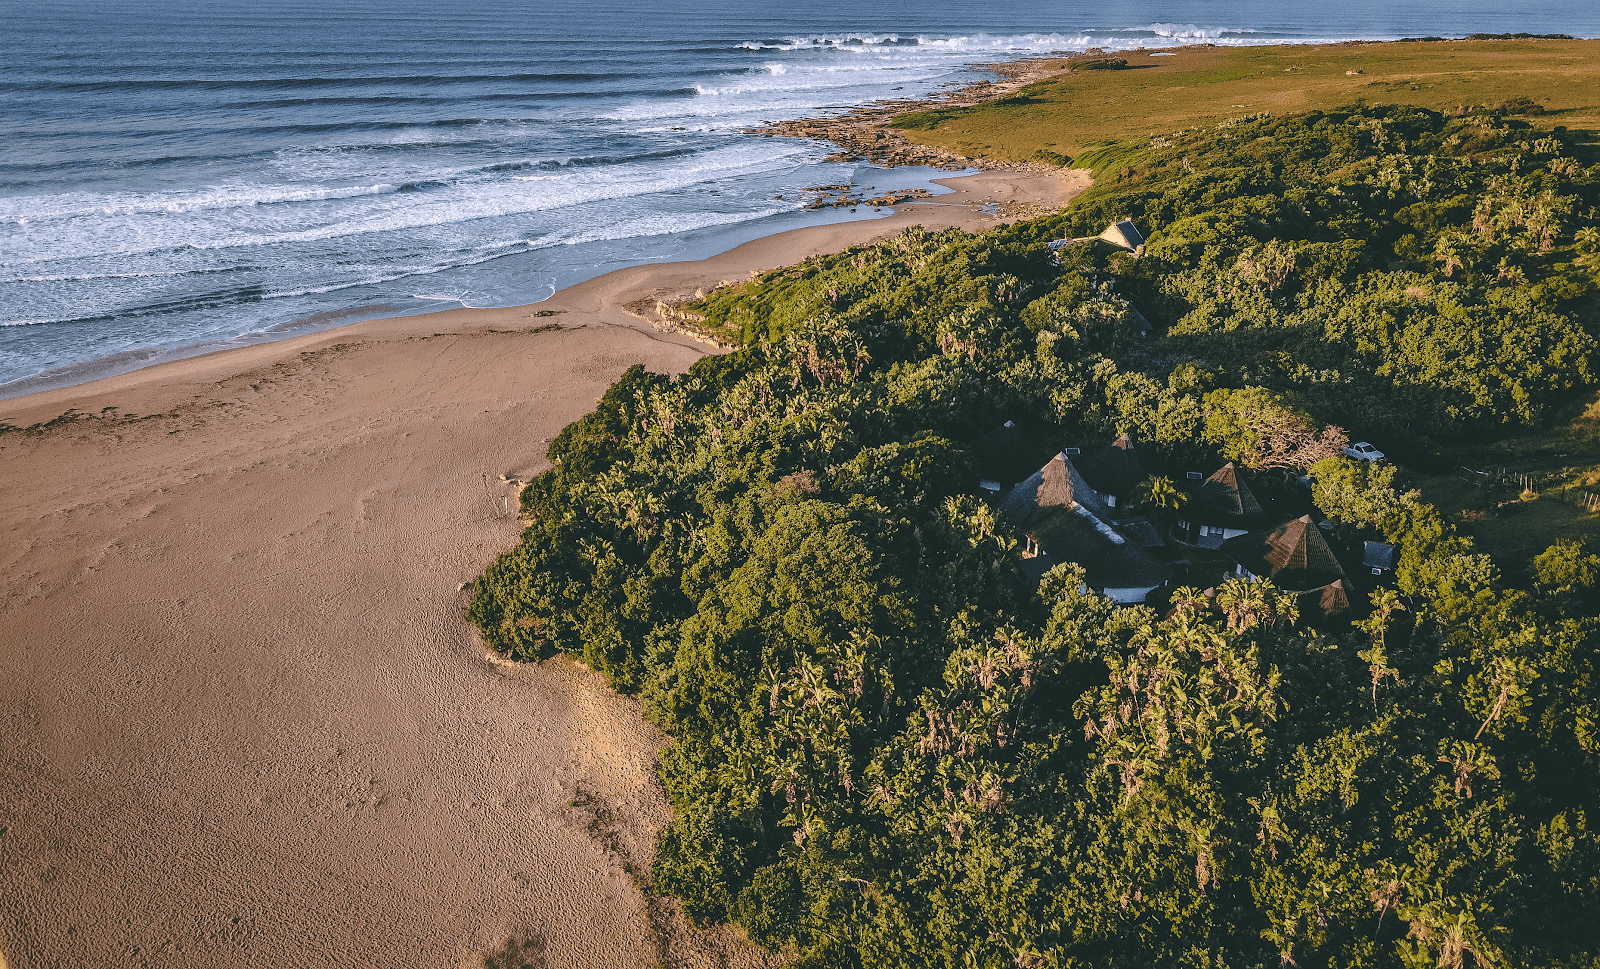 Zdjęcie Tezana beach z powierzchnią jasny piasek